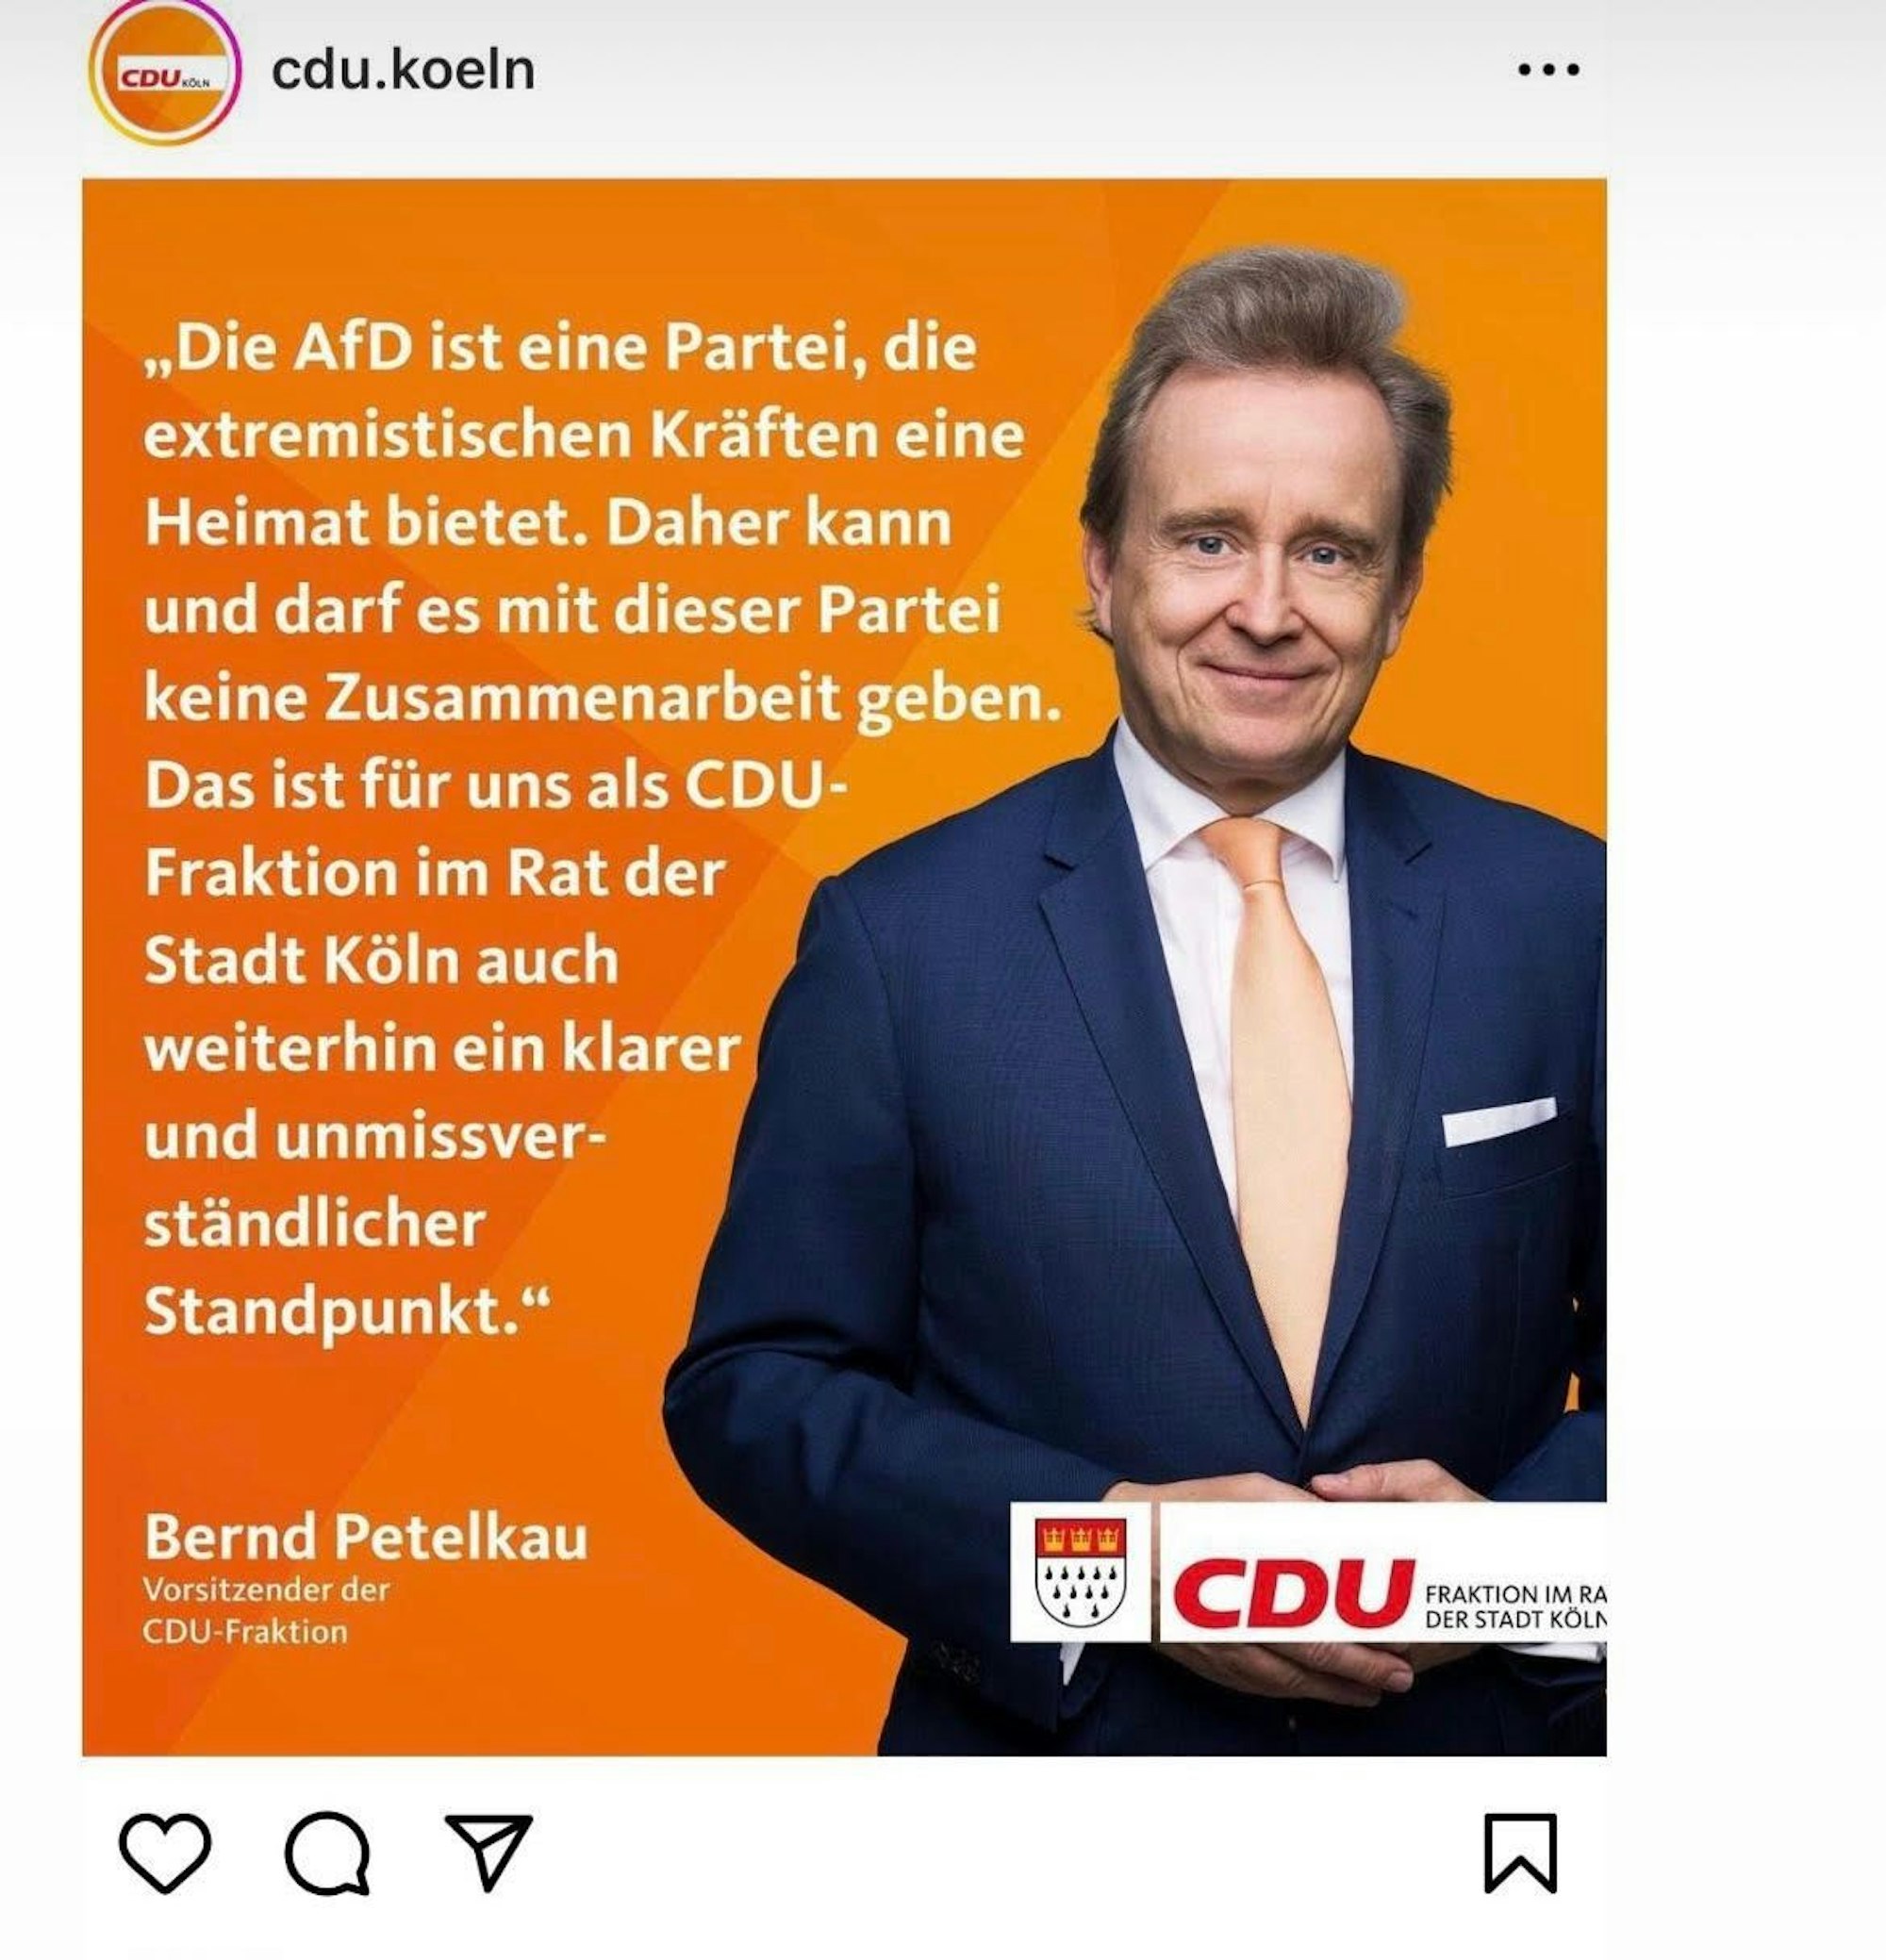 Der mittlerweile gelöschte Post der CDU zu den Aussagen von Friedrich Merz.